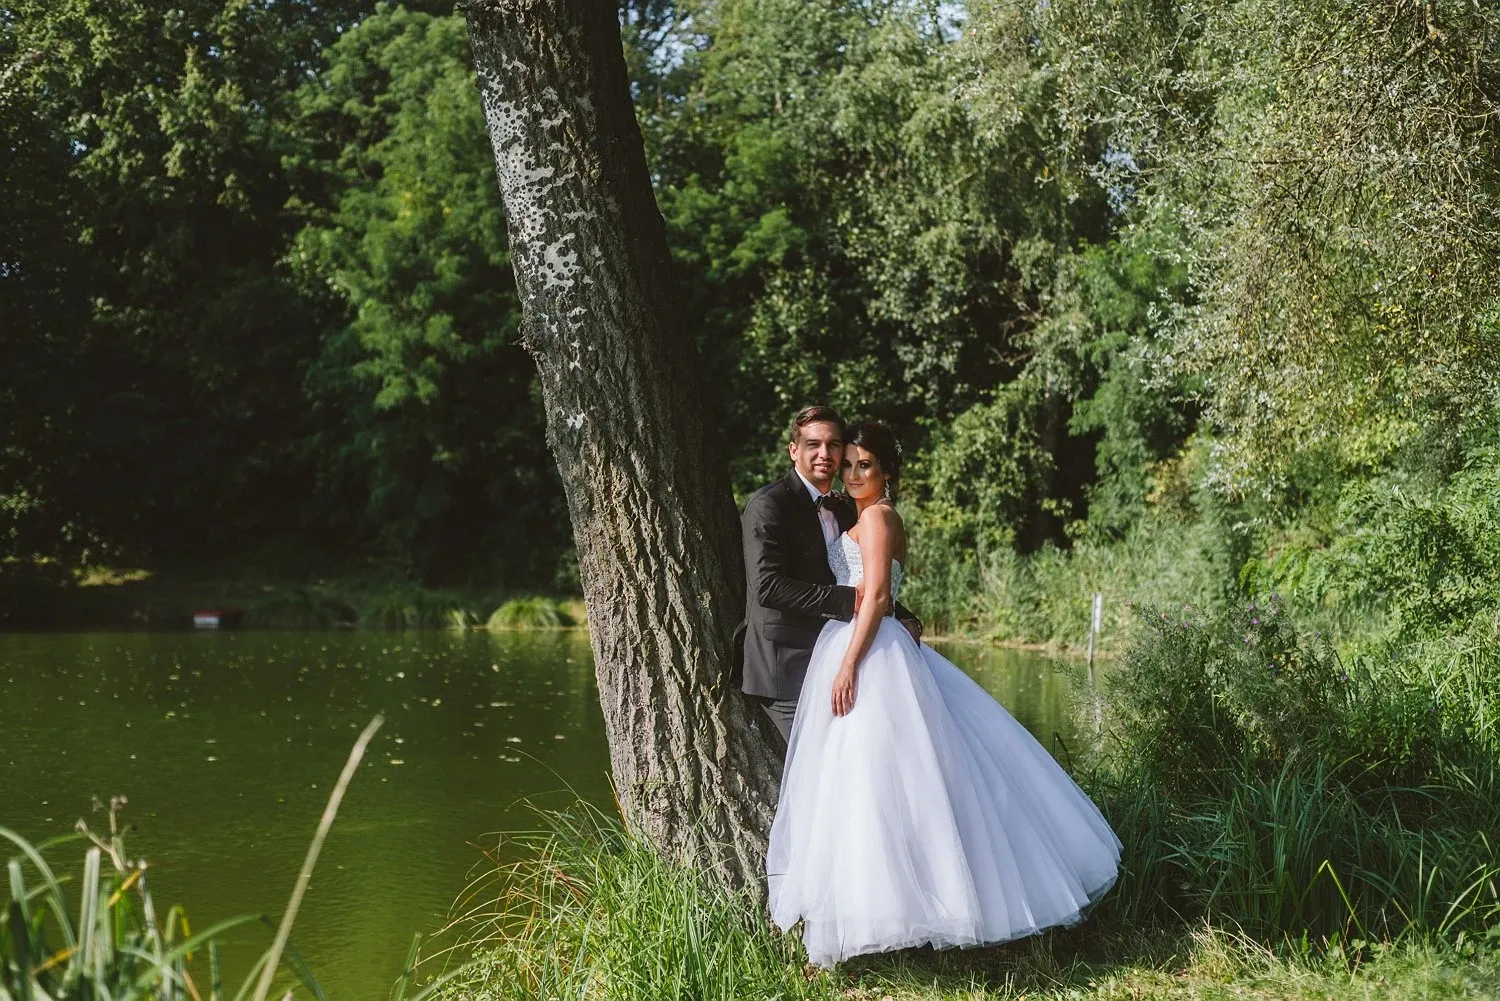 kingajakub_aftersession_1.webp - Kinga & Jakub- Monika Chmielewska - wedding, portaits, family photography - Munich